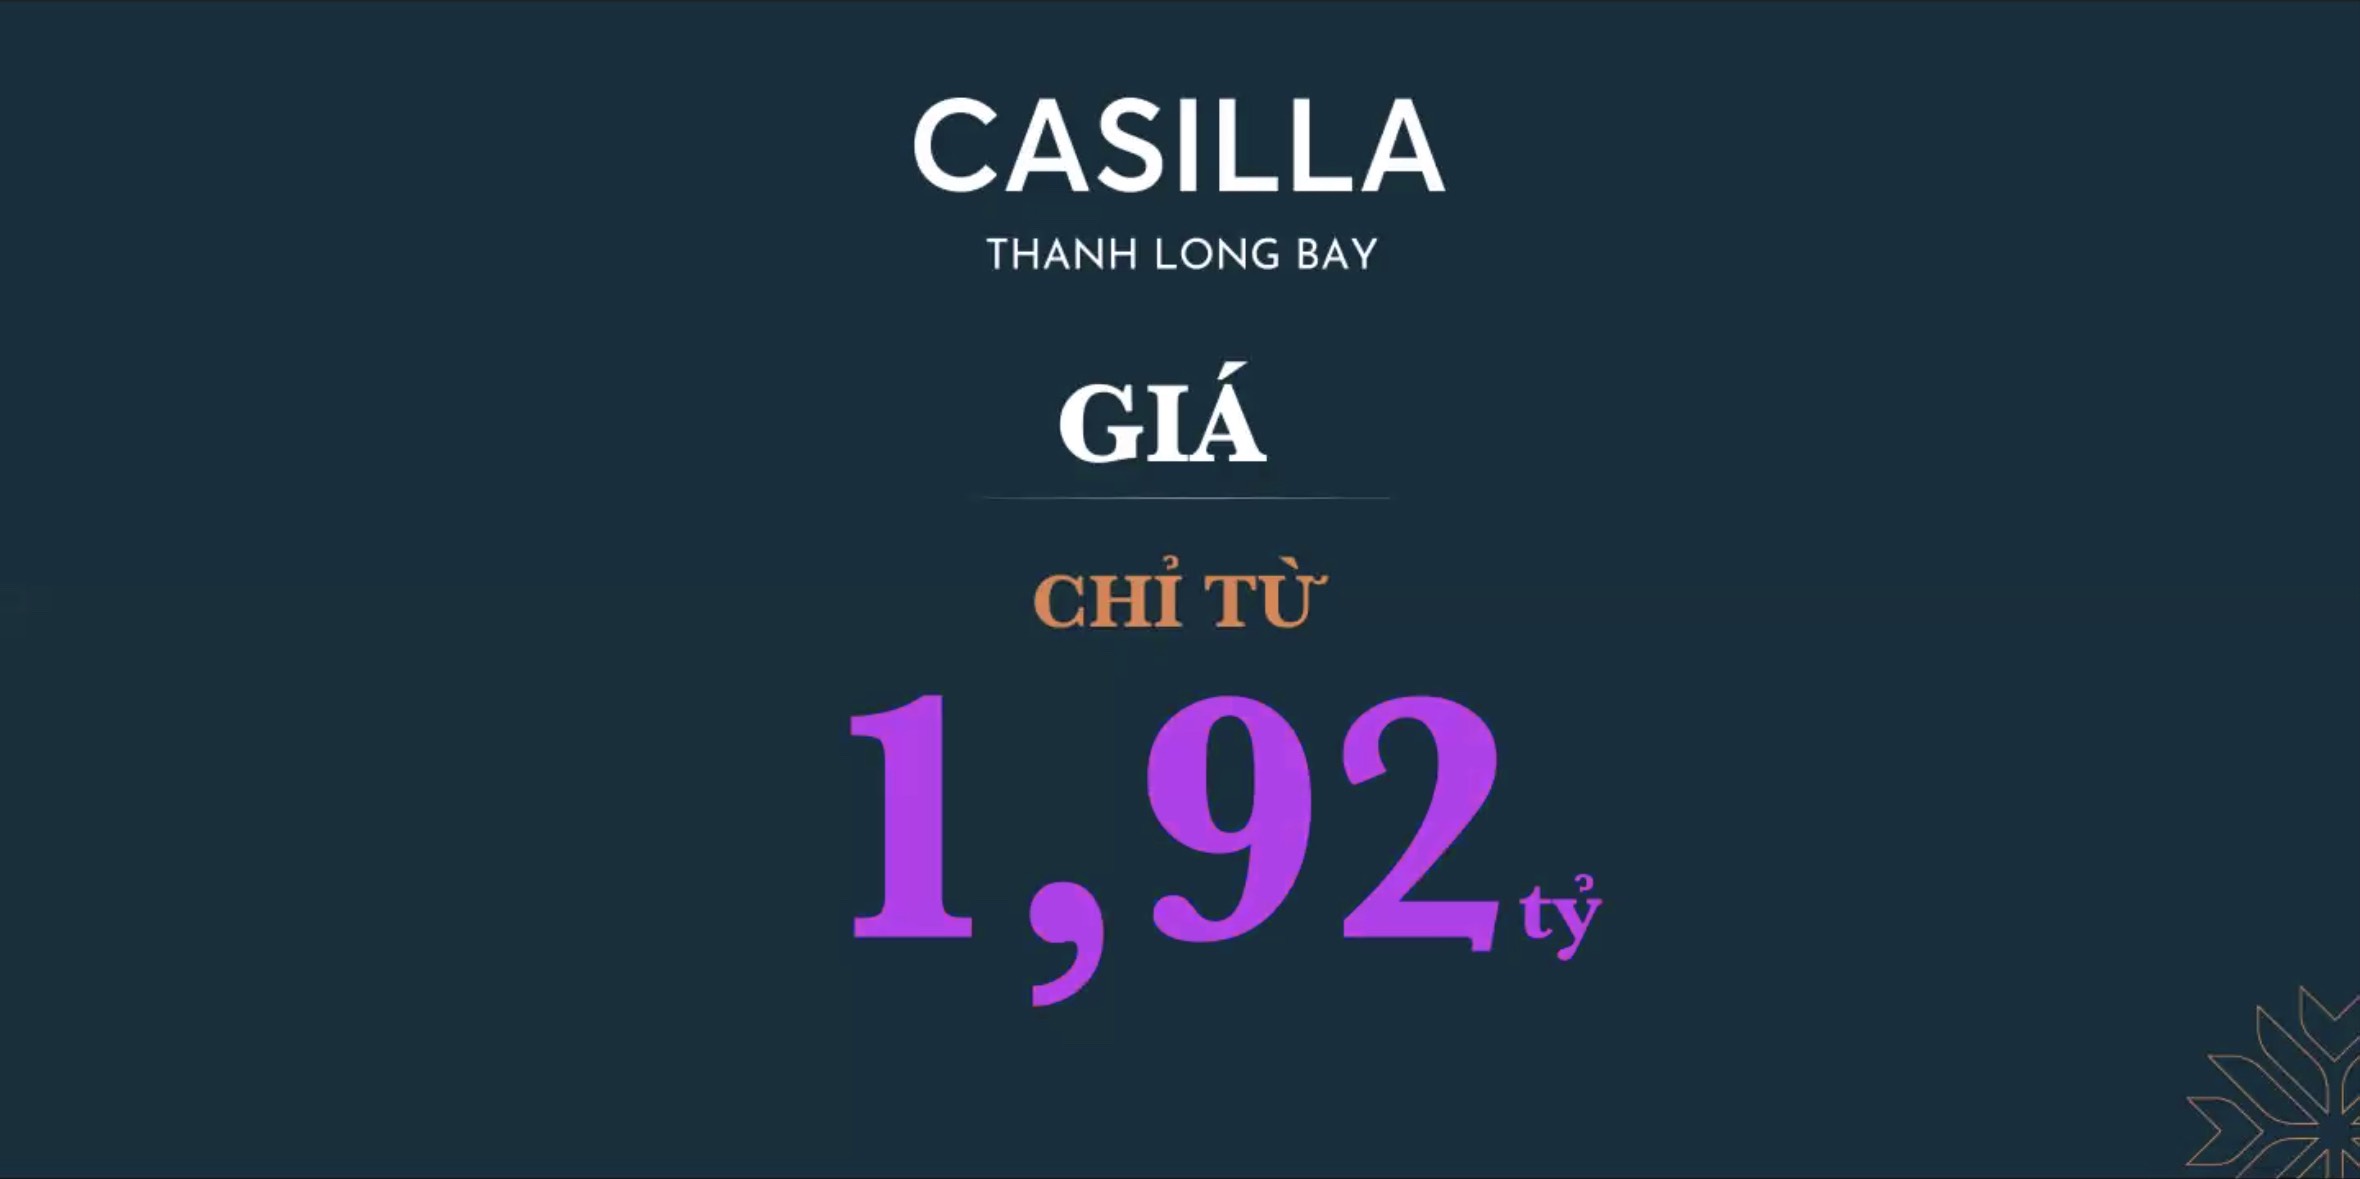 Giá bán giai đoạn đầu tiên tại Casilla Thanh Long Bay